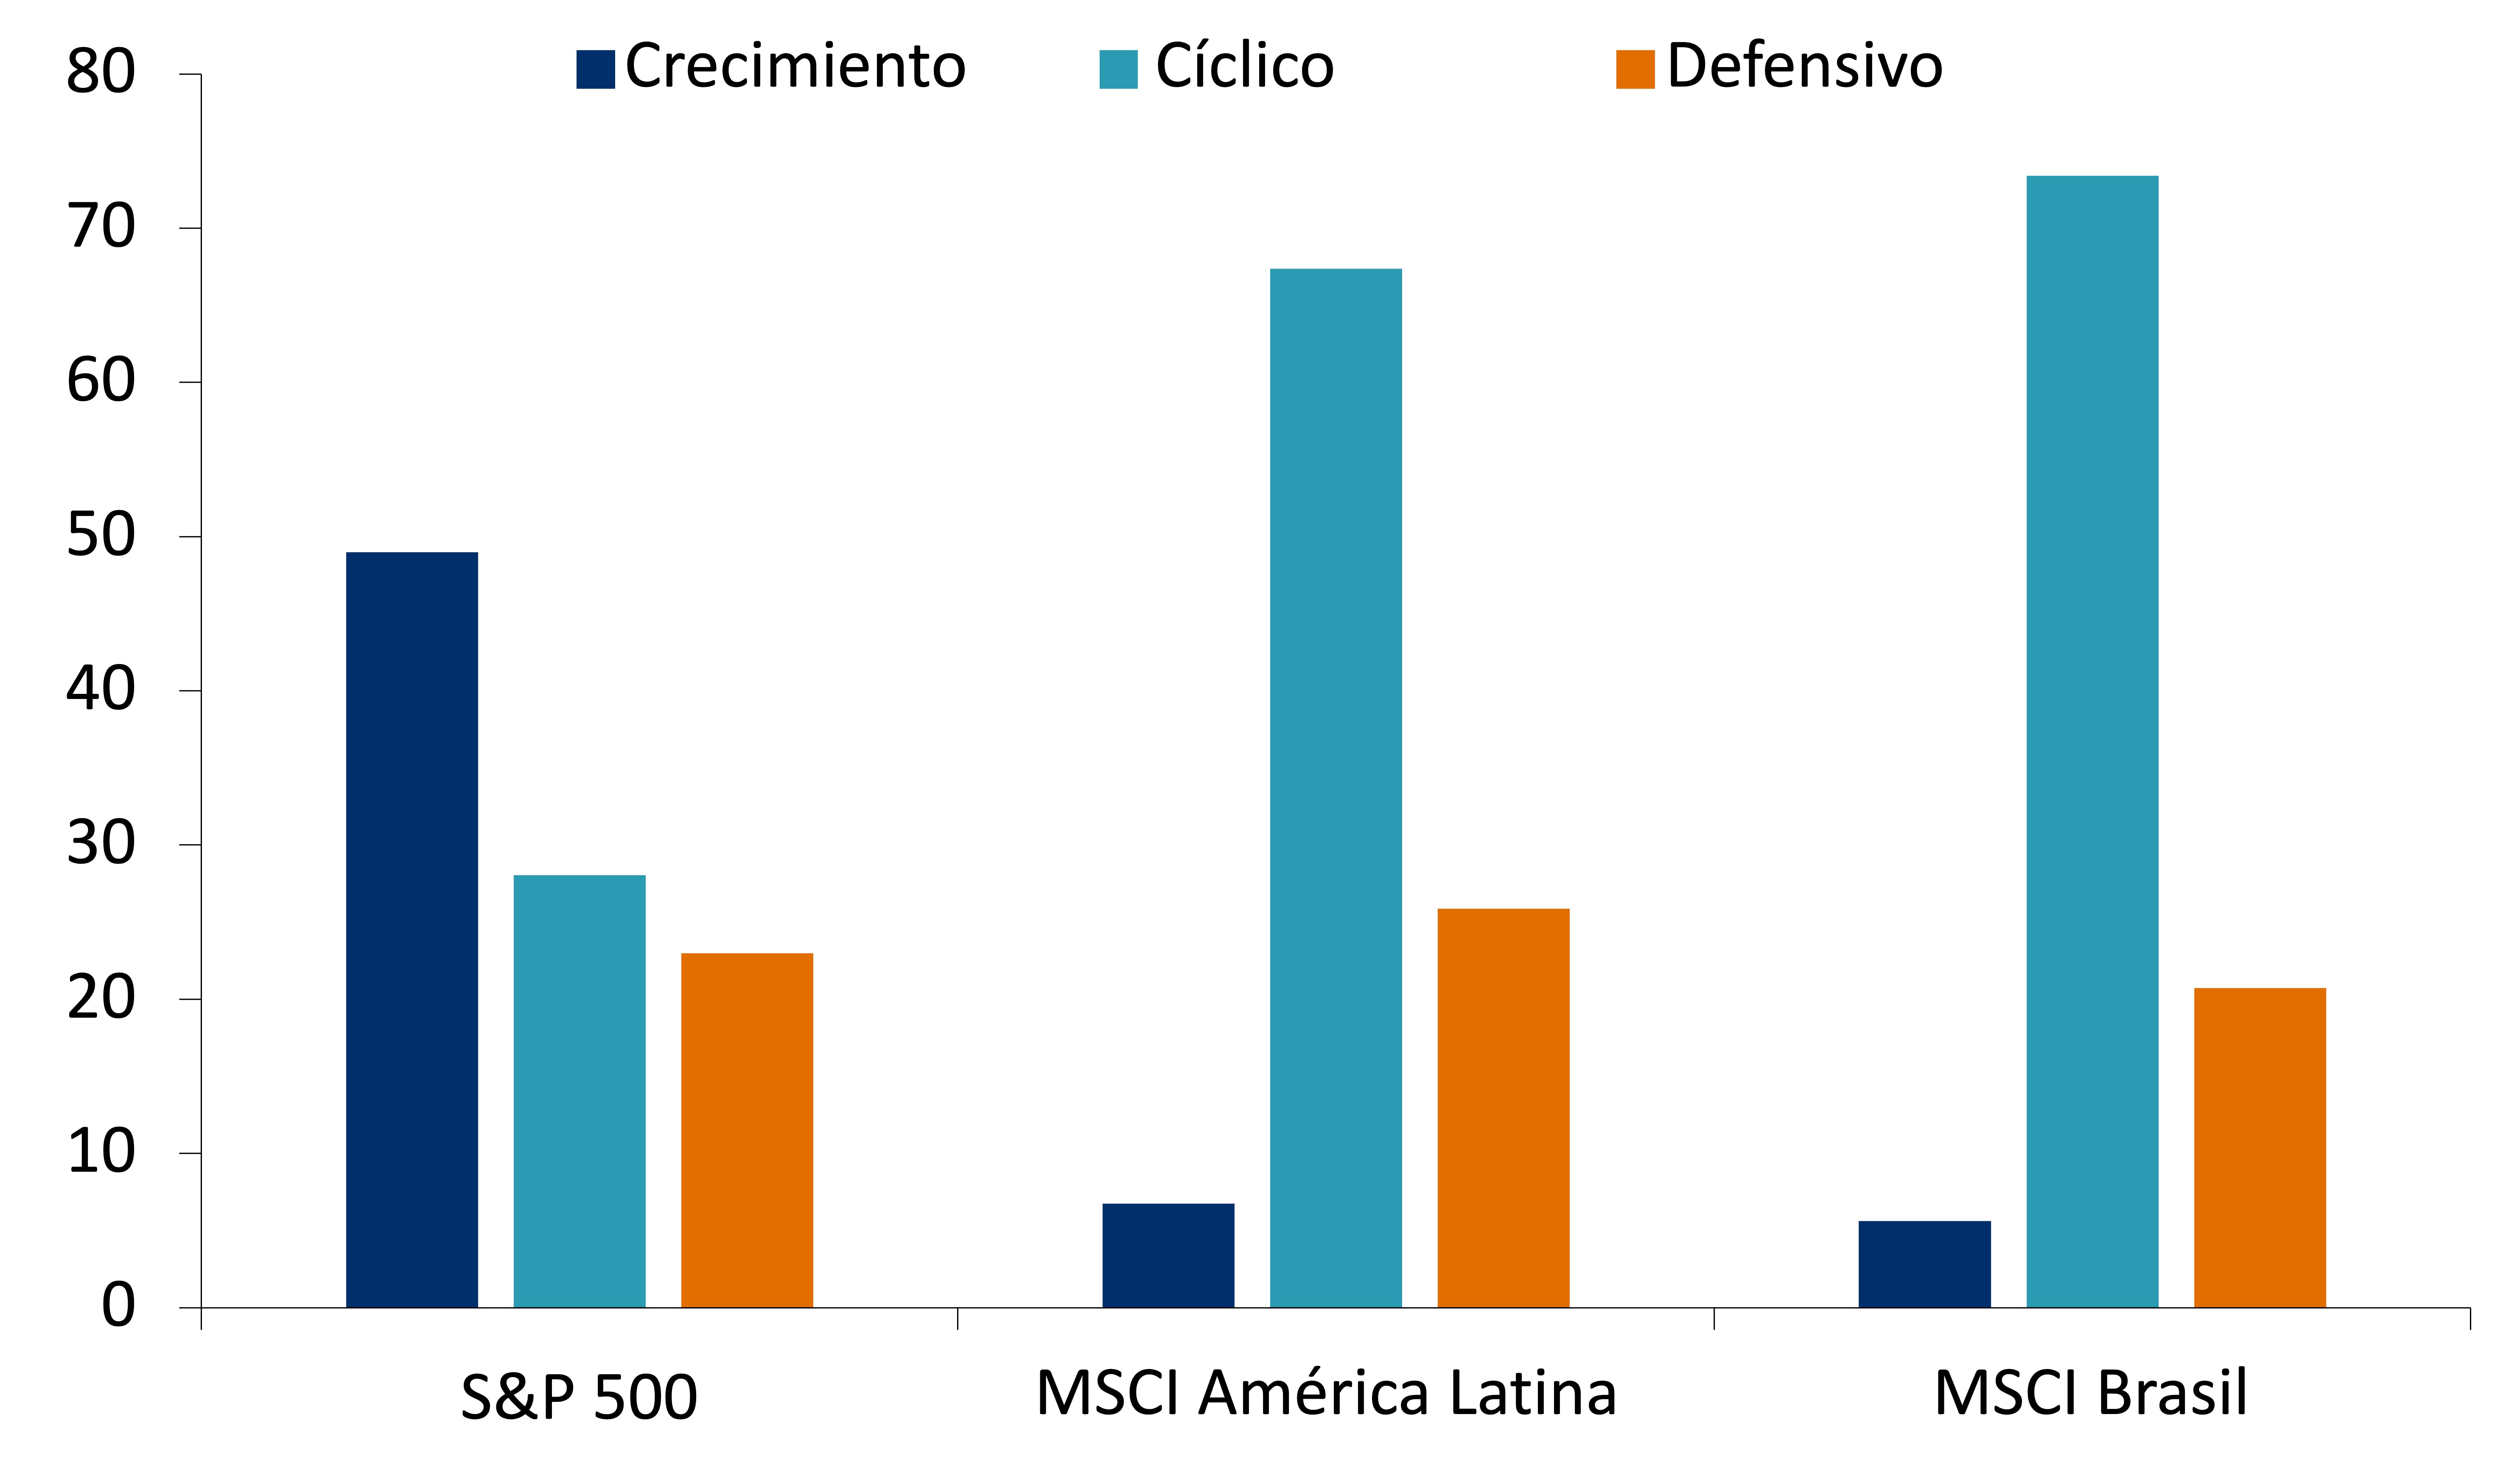 Este gráfico muestra la composición de los mercados de valores, entre crecimiento, cíclico y defensivo, para el S&P 500, MSCI América Latina y MSCI Brasil.